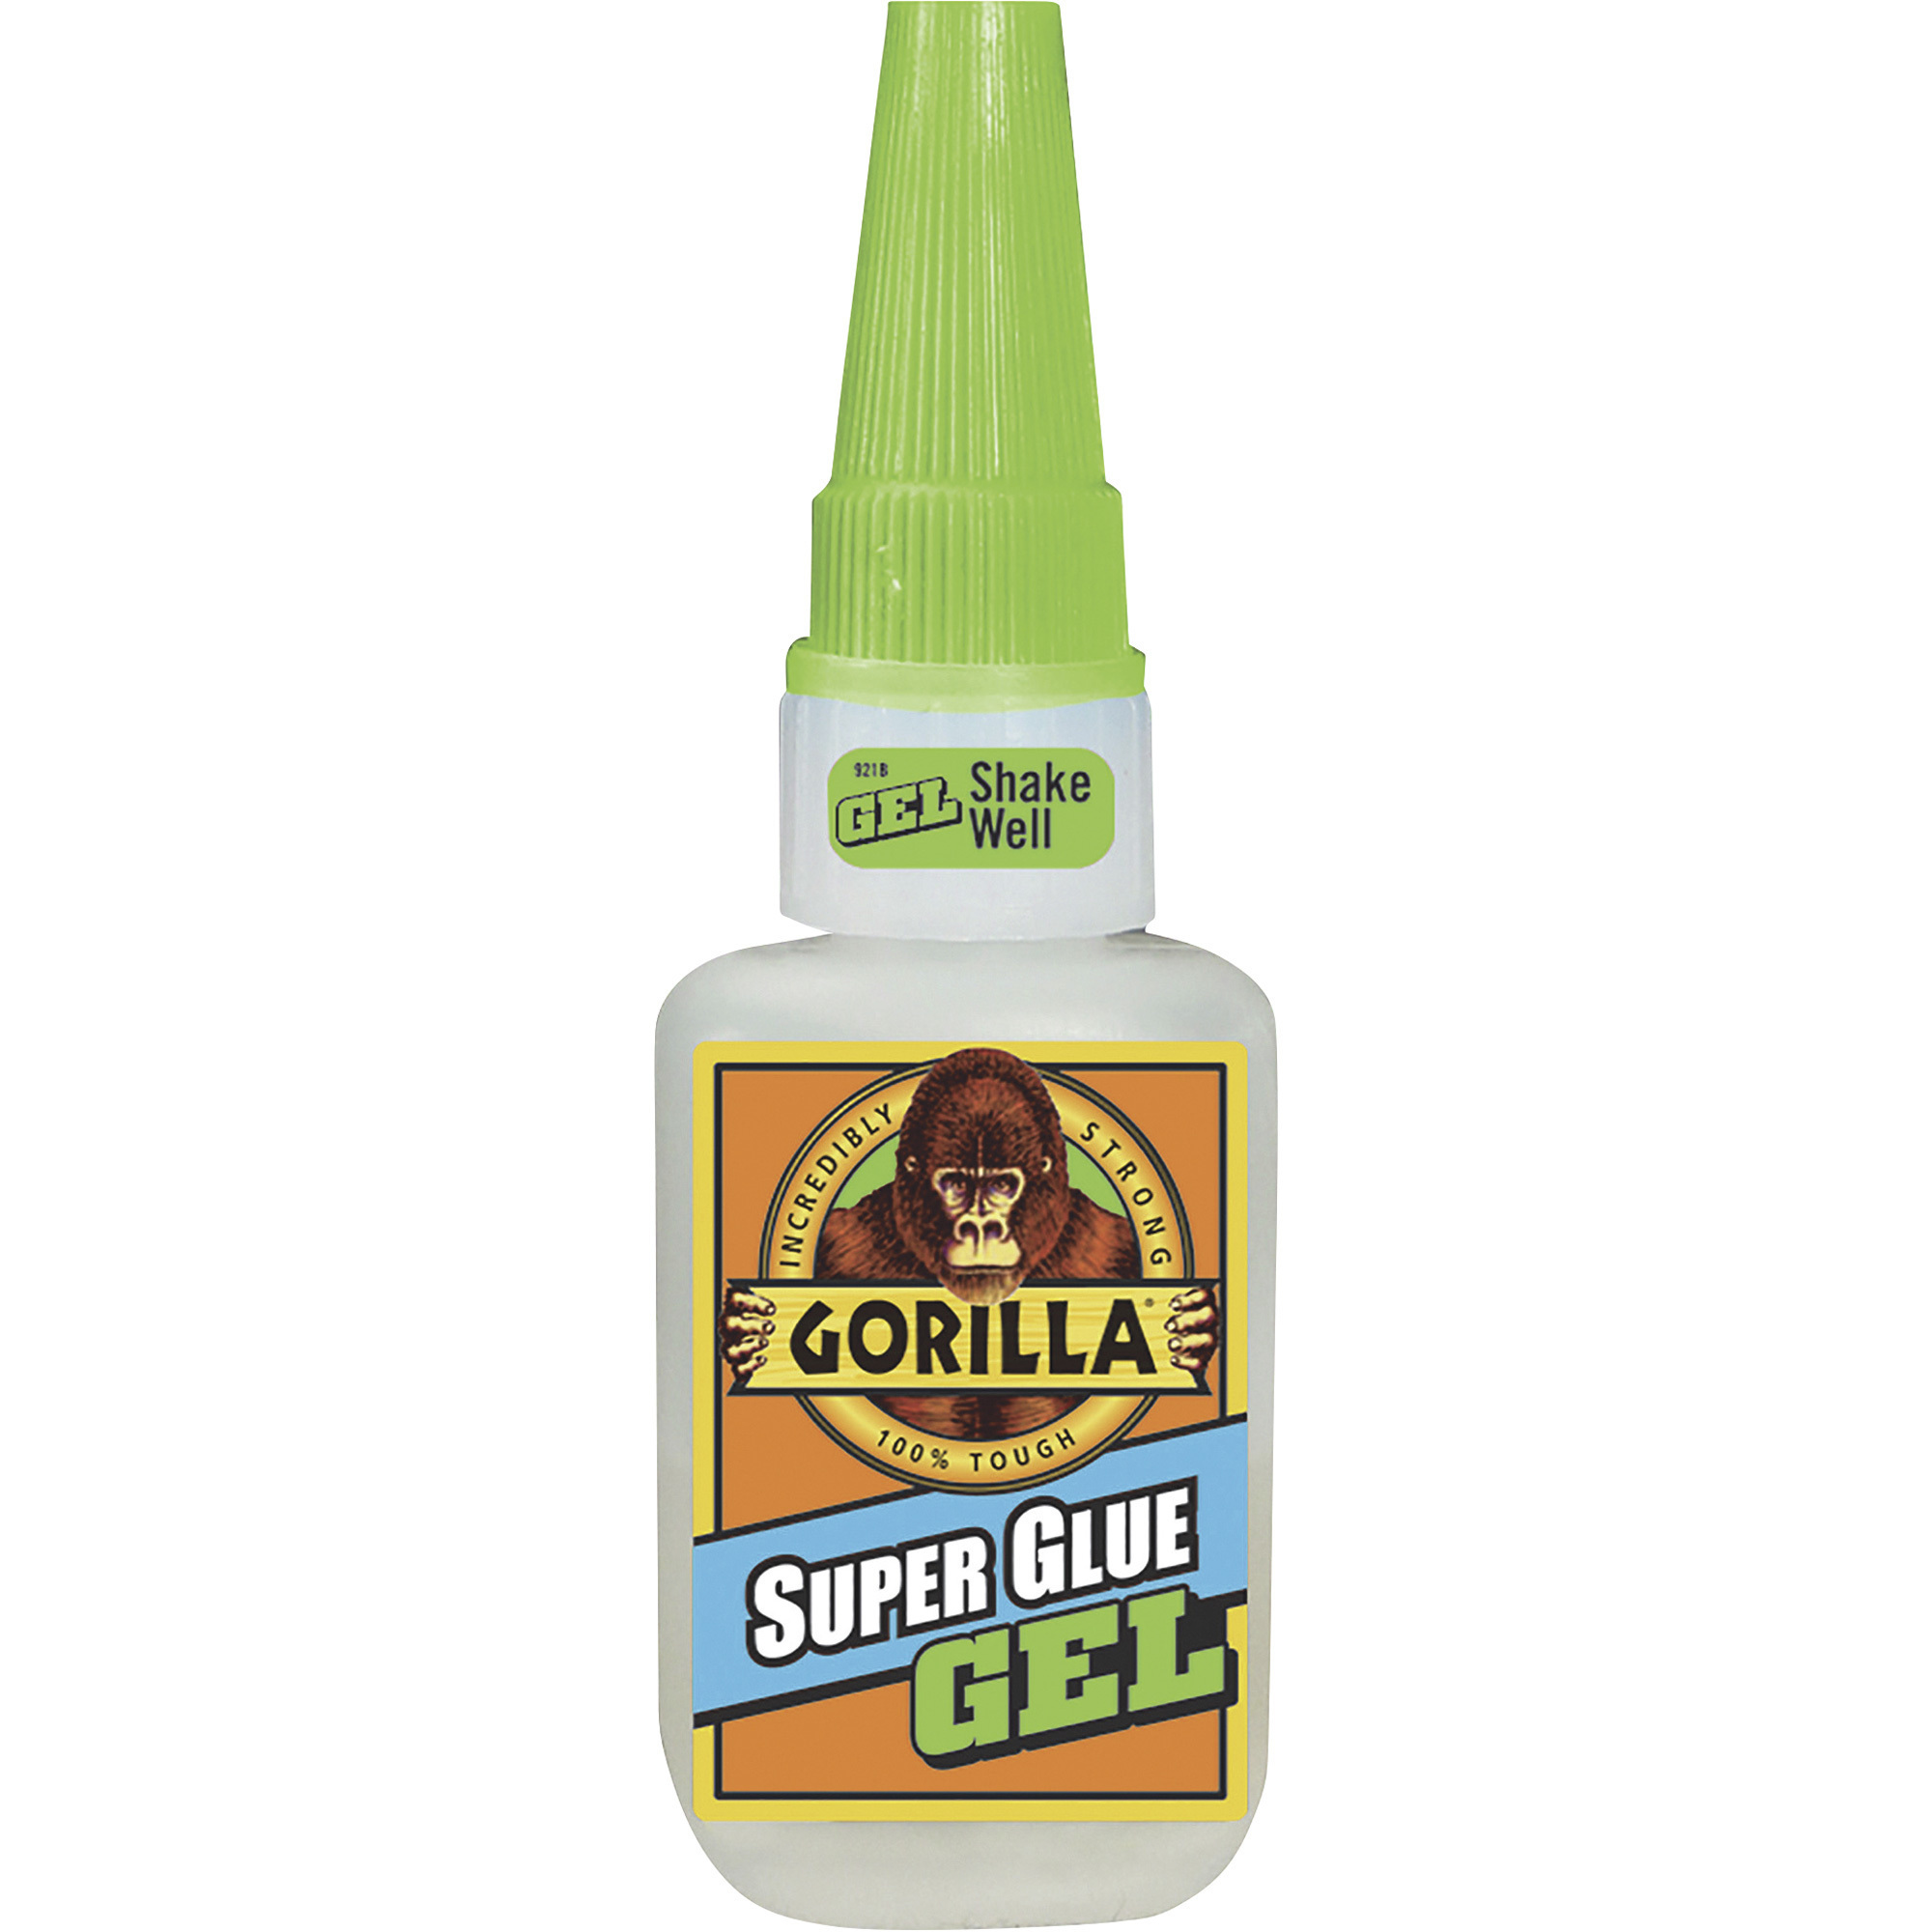 Gorilla Glue Super Glue Gel â 0.53-Oz. Bottle